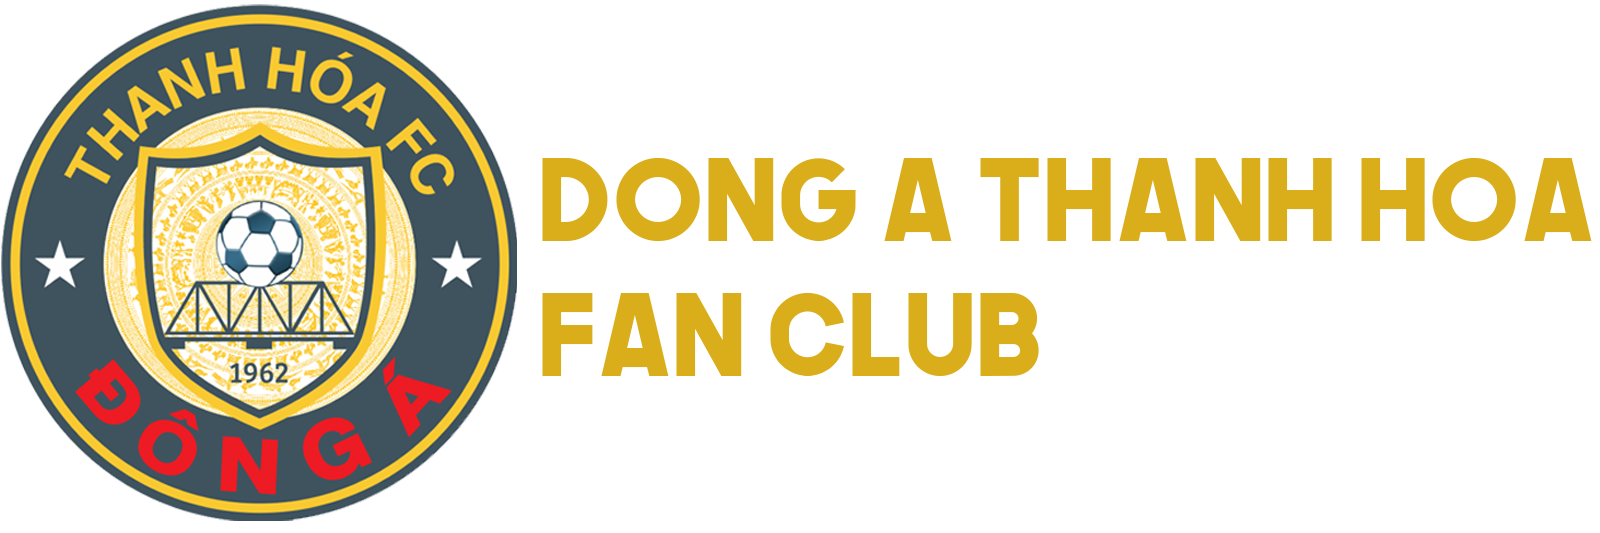 Đông Á Thanh Hóa Fan Club